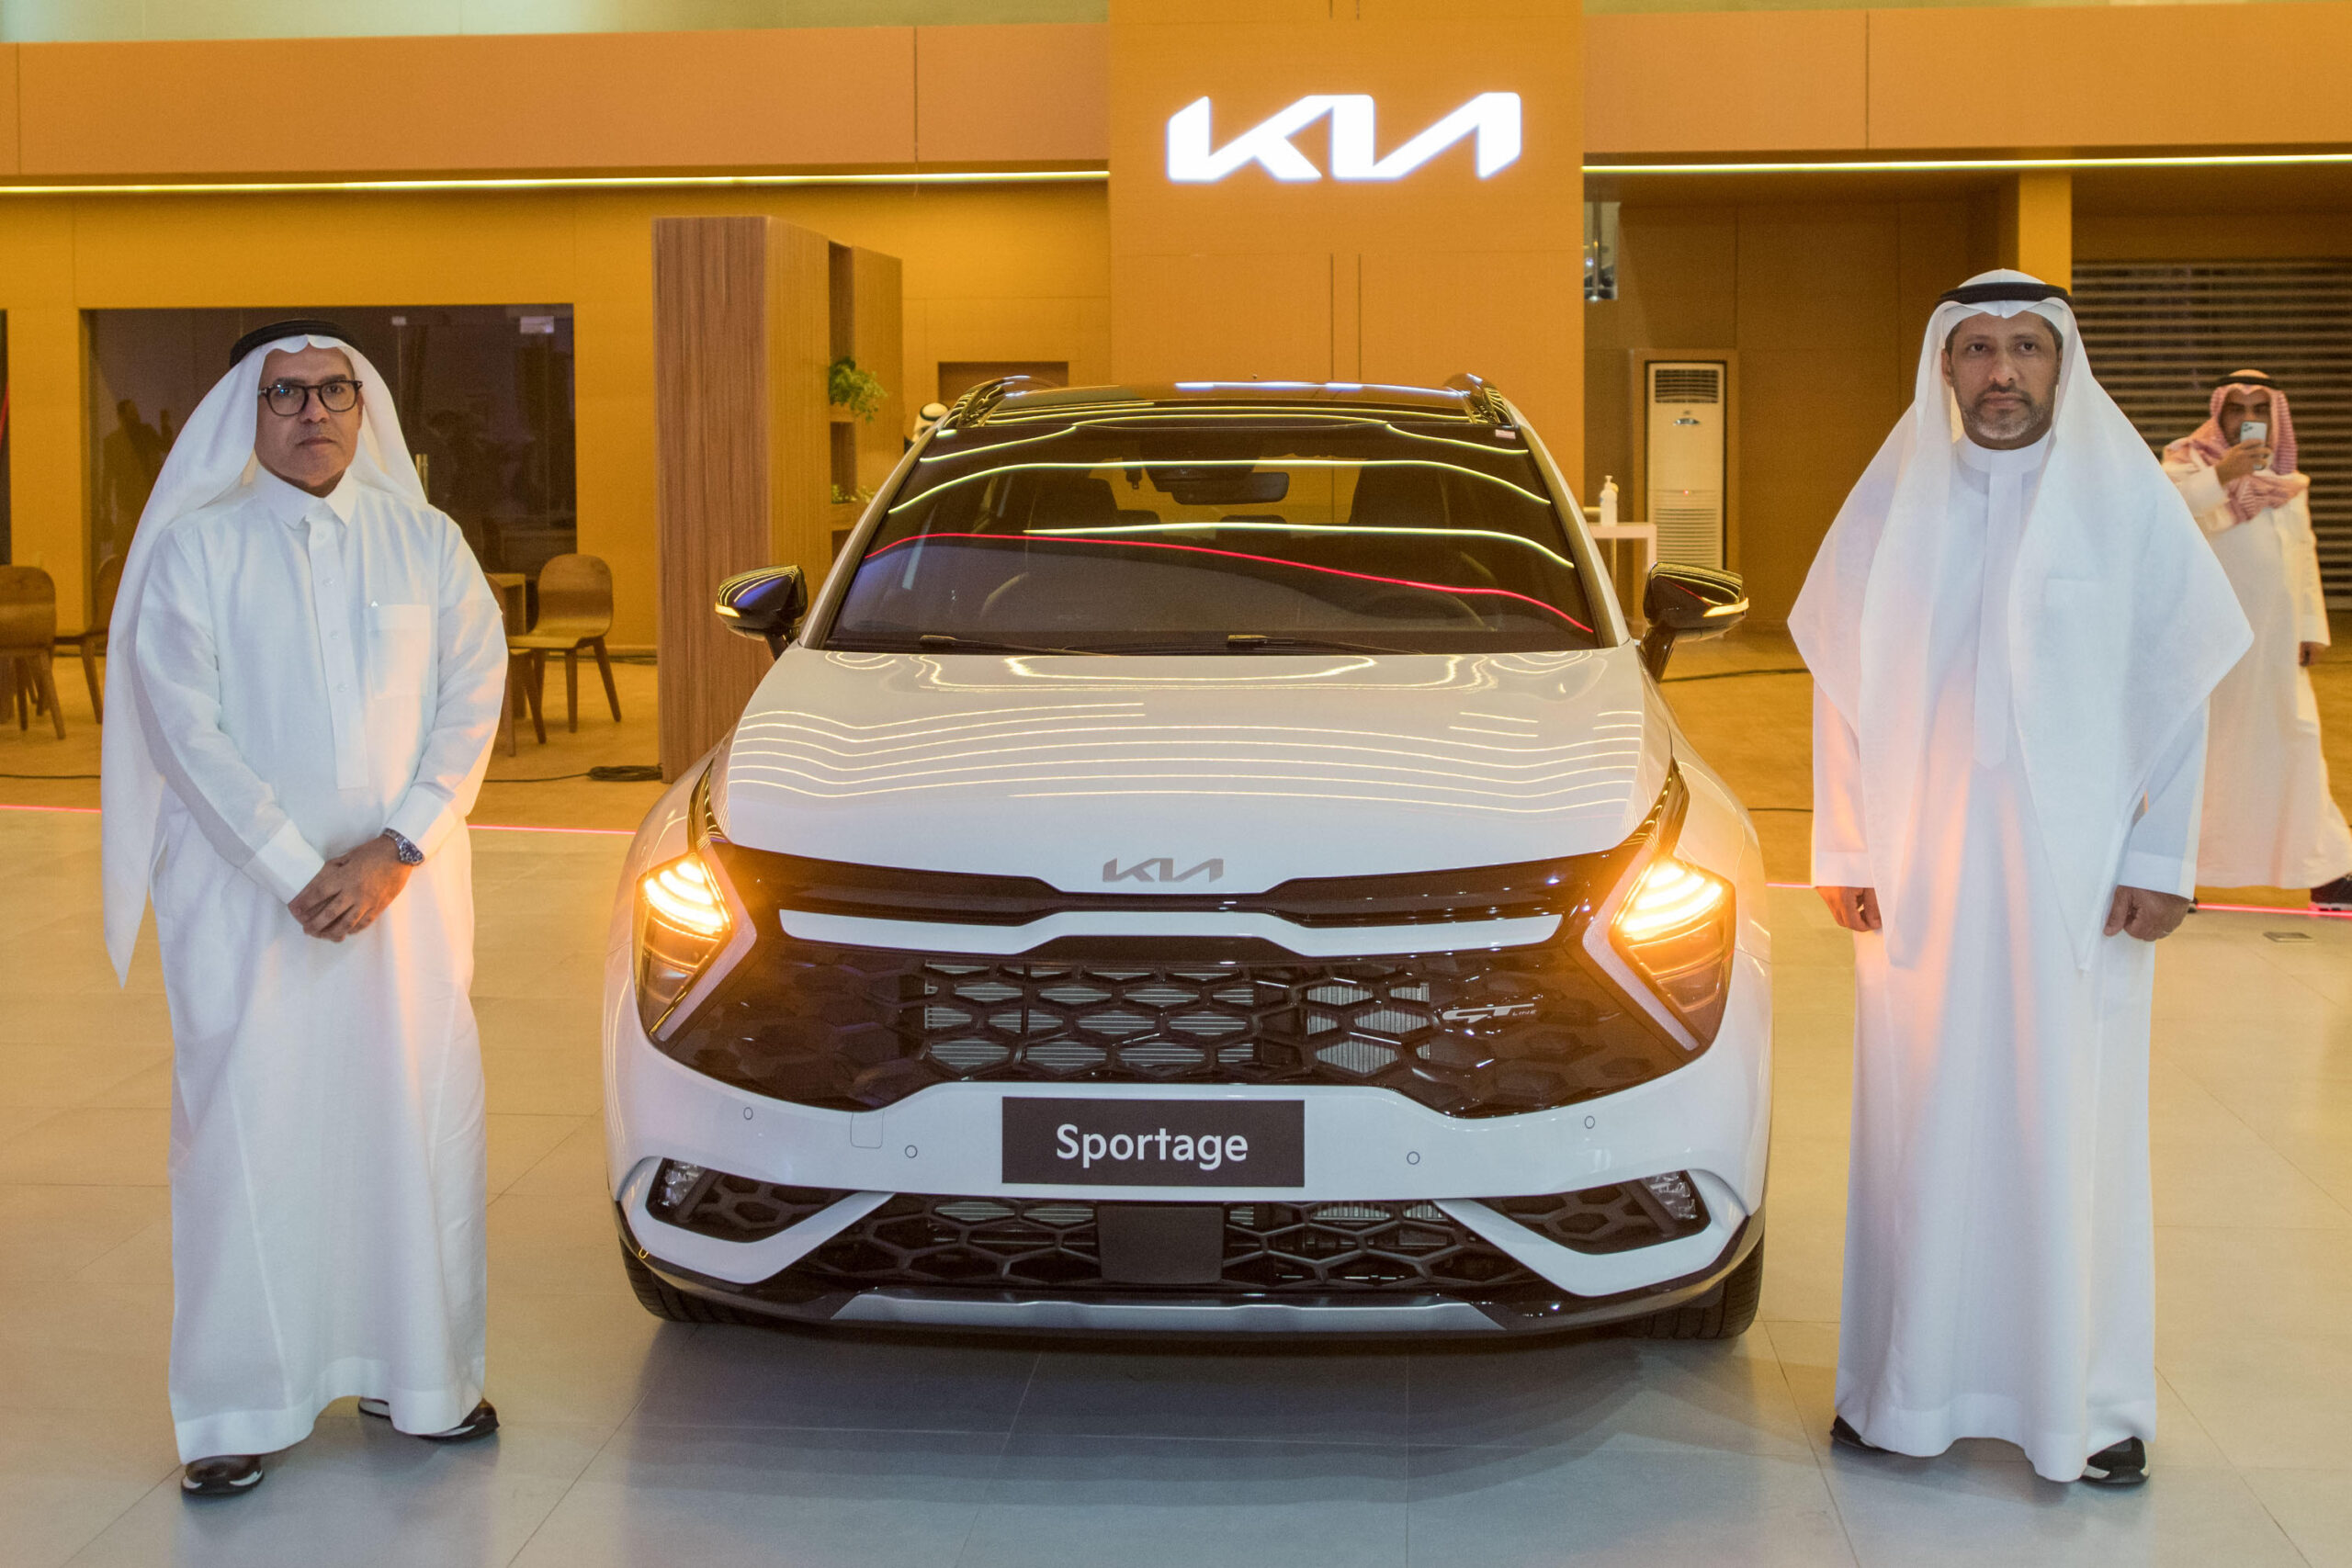 “كيا الجبر” تدشن الجيل الخامس من سيارة سبورتج في الرياض في حفل احتضنه معرضها في البديعة وسط حضور كبير